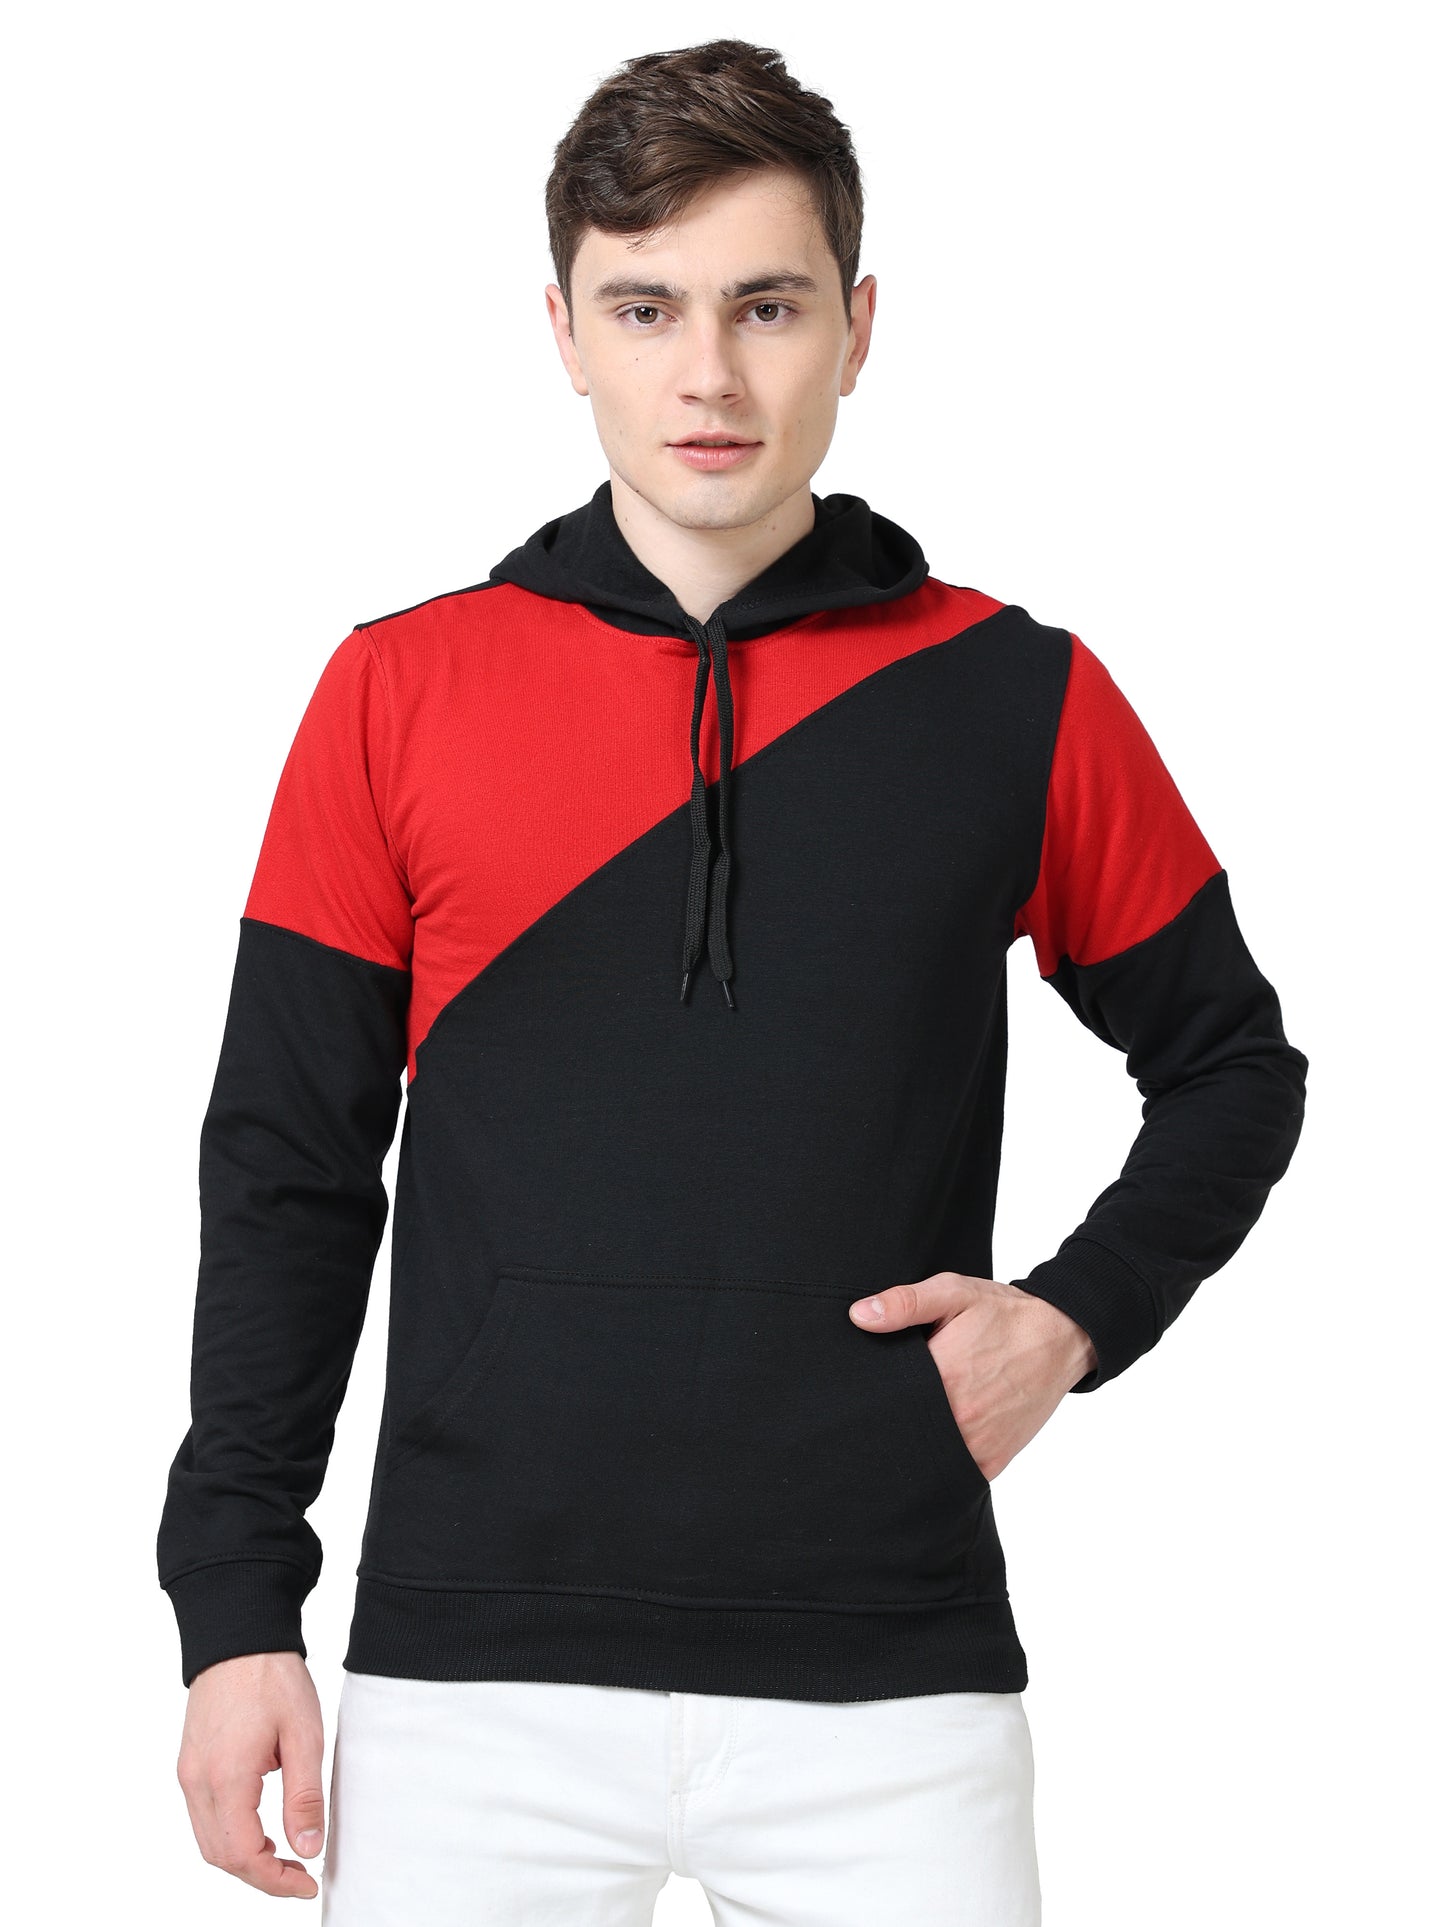 Men's Cotton Color Block Sweatshirt Redblack Color Hoodies